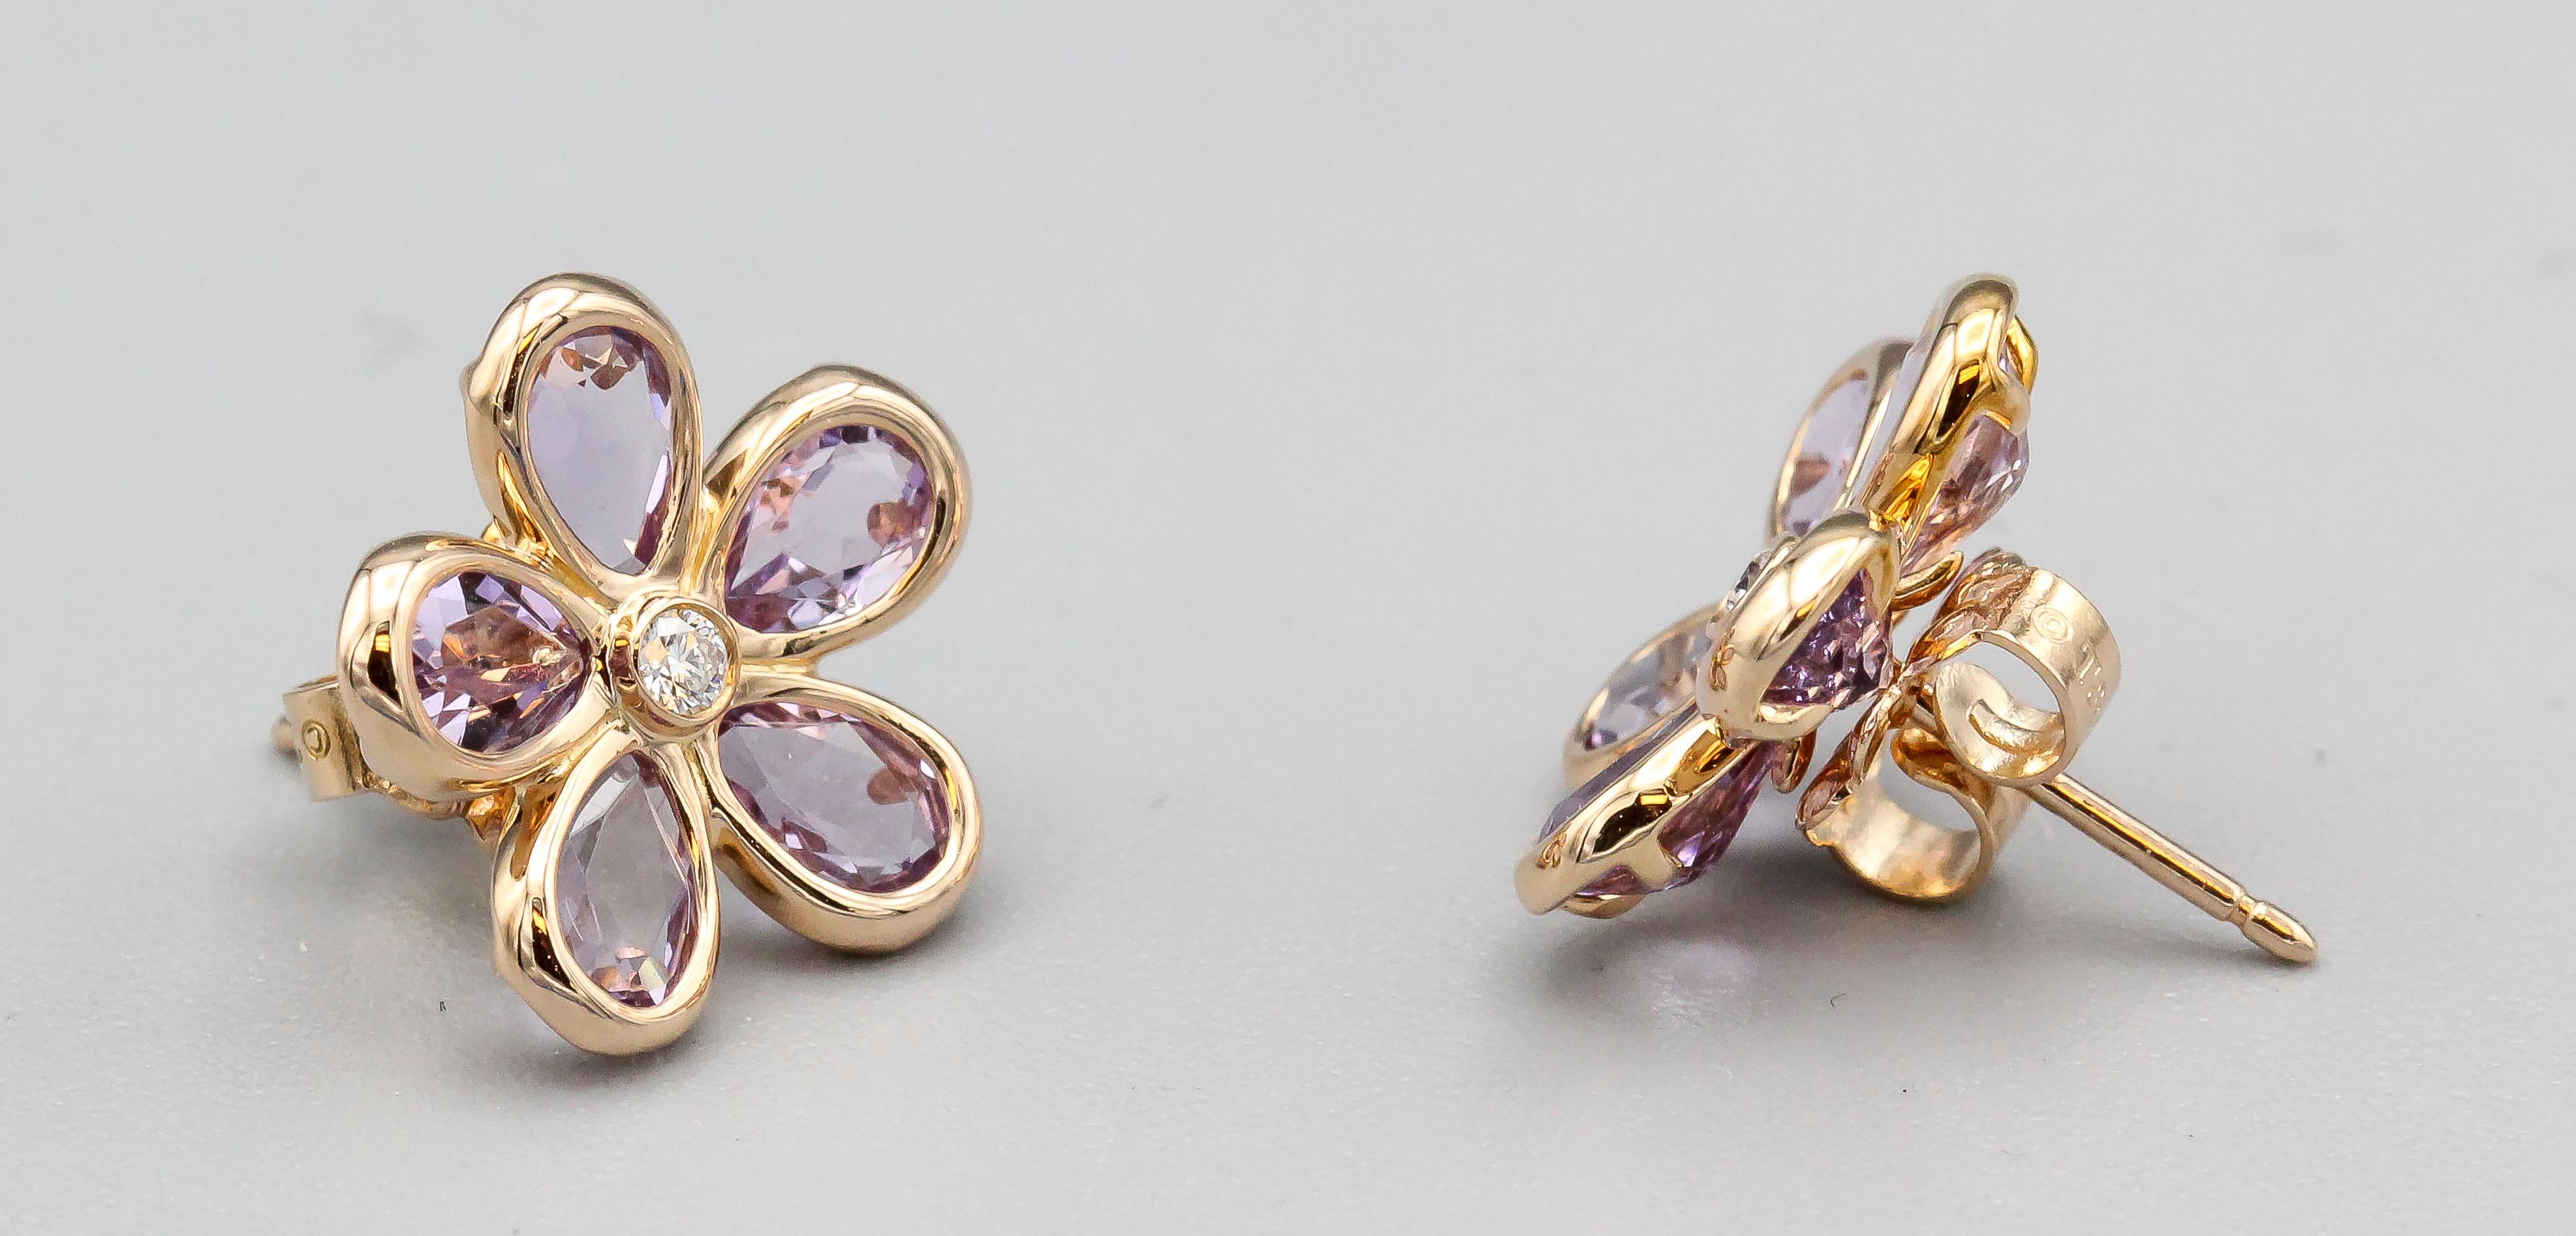 Boucles d'oreilles en améthyste, diamant et or jaune 18K de Tiffany & Co. Elles présentent des pétales d'améthyste en forme de poire de haute qualité entourant un diamant rond de taille brillant au centre d'une fleur ouverte.  Une charmante paire de